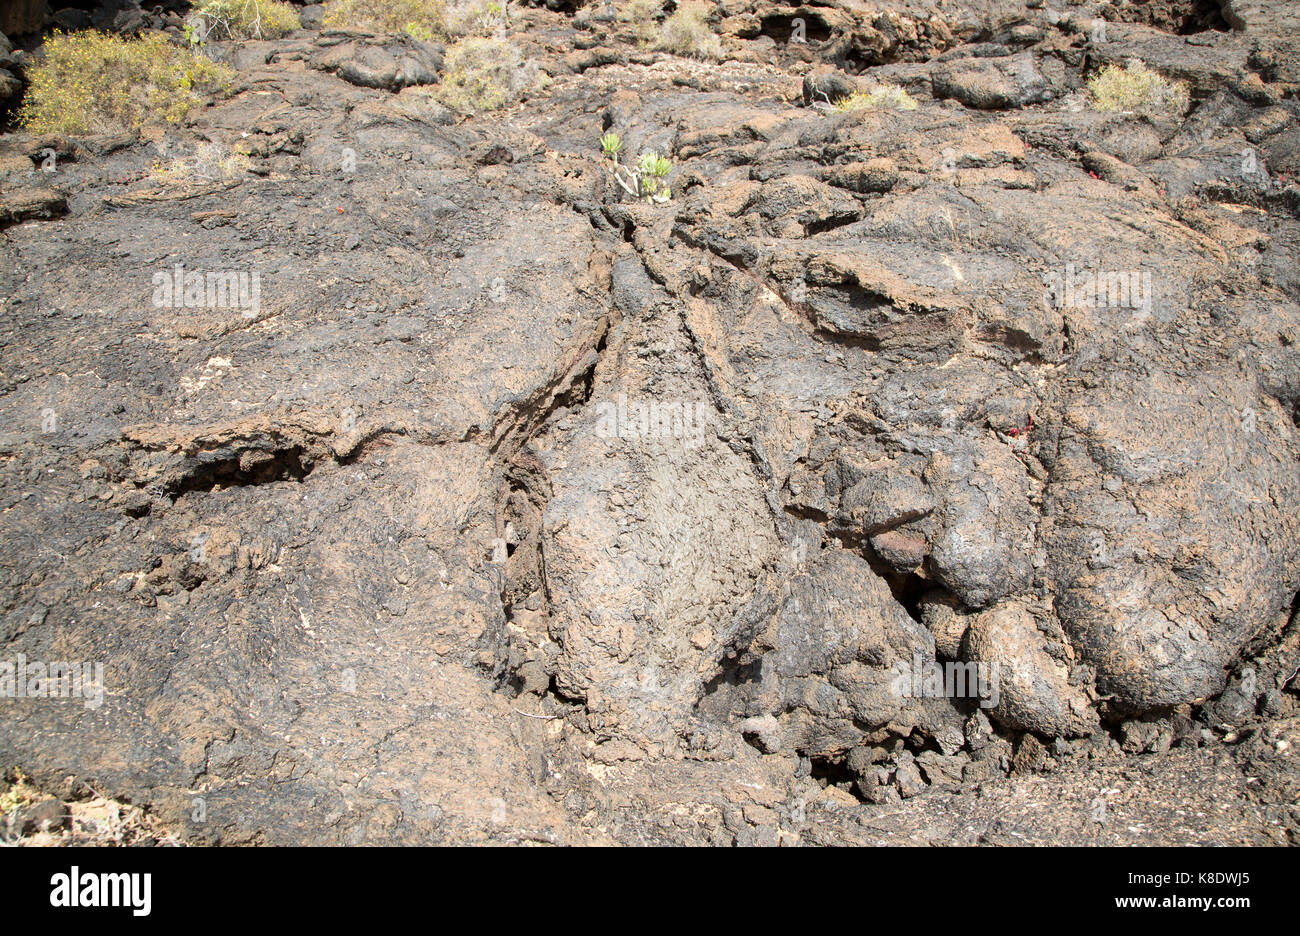 Piante che crescono in solidificato o pahoehoe ropey campo di lava, Tahiche, Lanzarote, Isole Canarie, Spagna Foto Stock